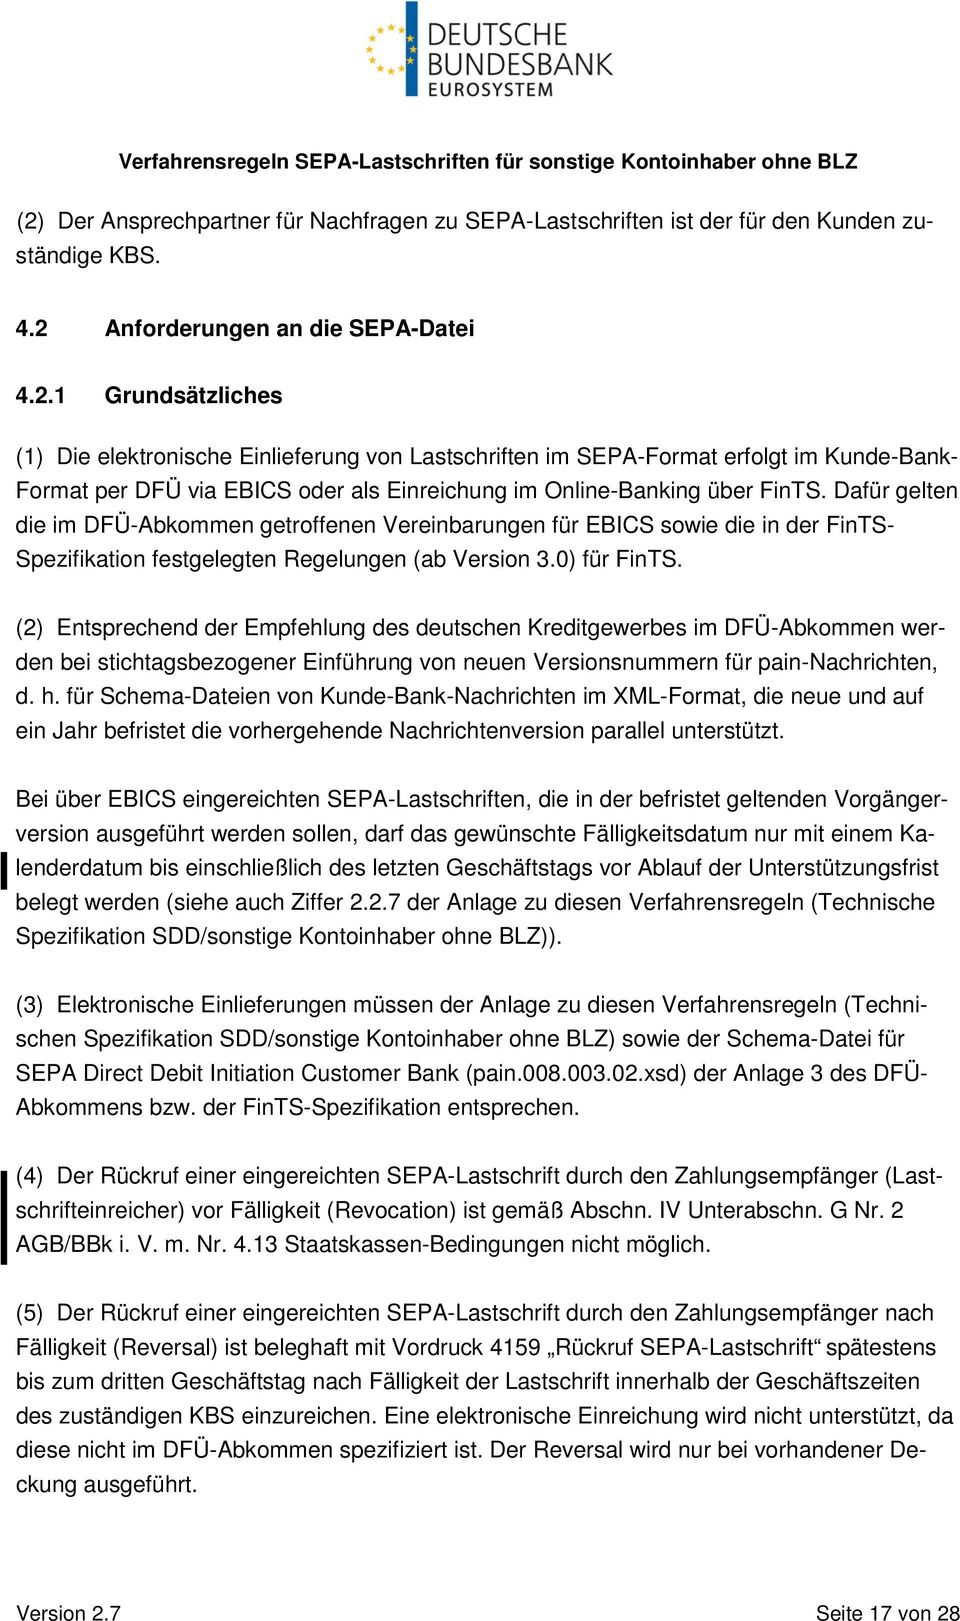 (2) Entsprechend der Empfehlung des deutschen Kreditgewerbes im DFÜ-Abkommen werden bei stichtagsbezogener Einführung von neuen Versionsnummern für pain-nachrichten, d. h.